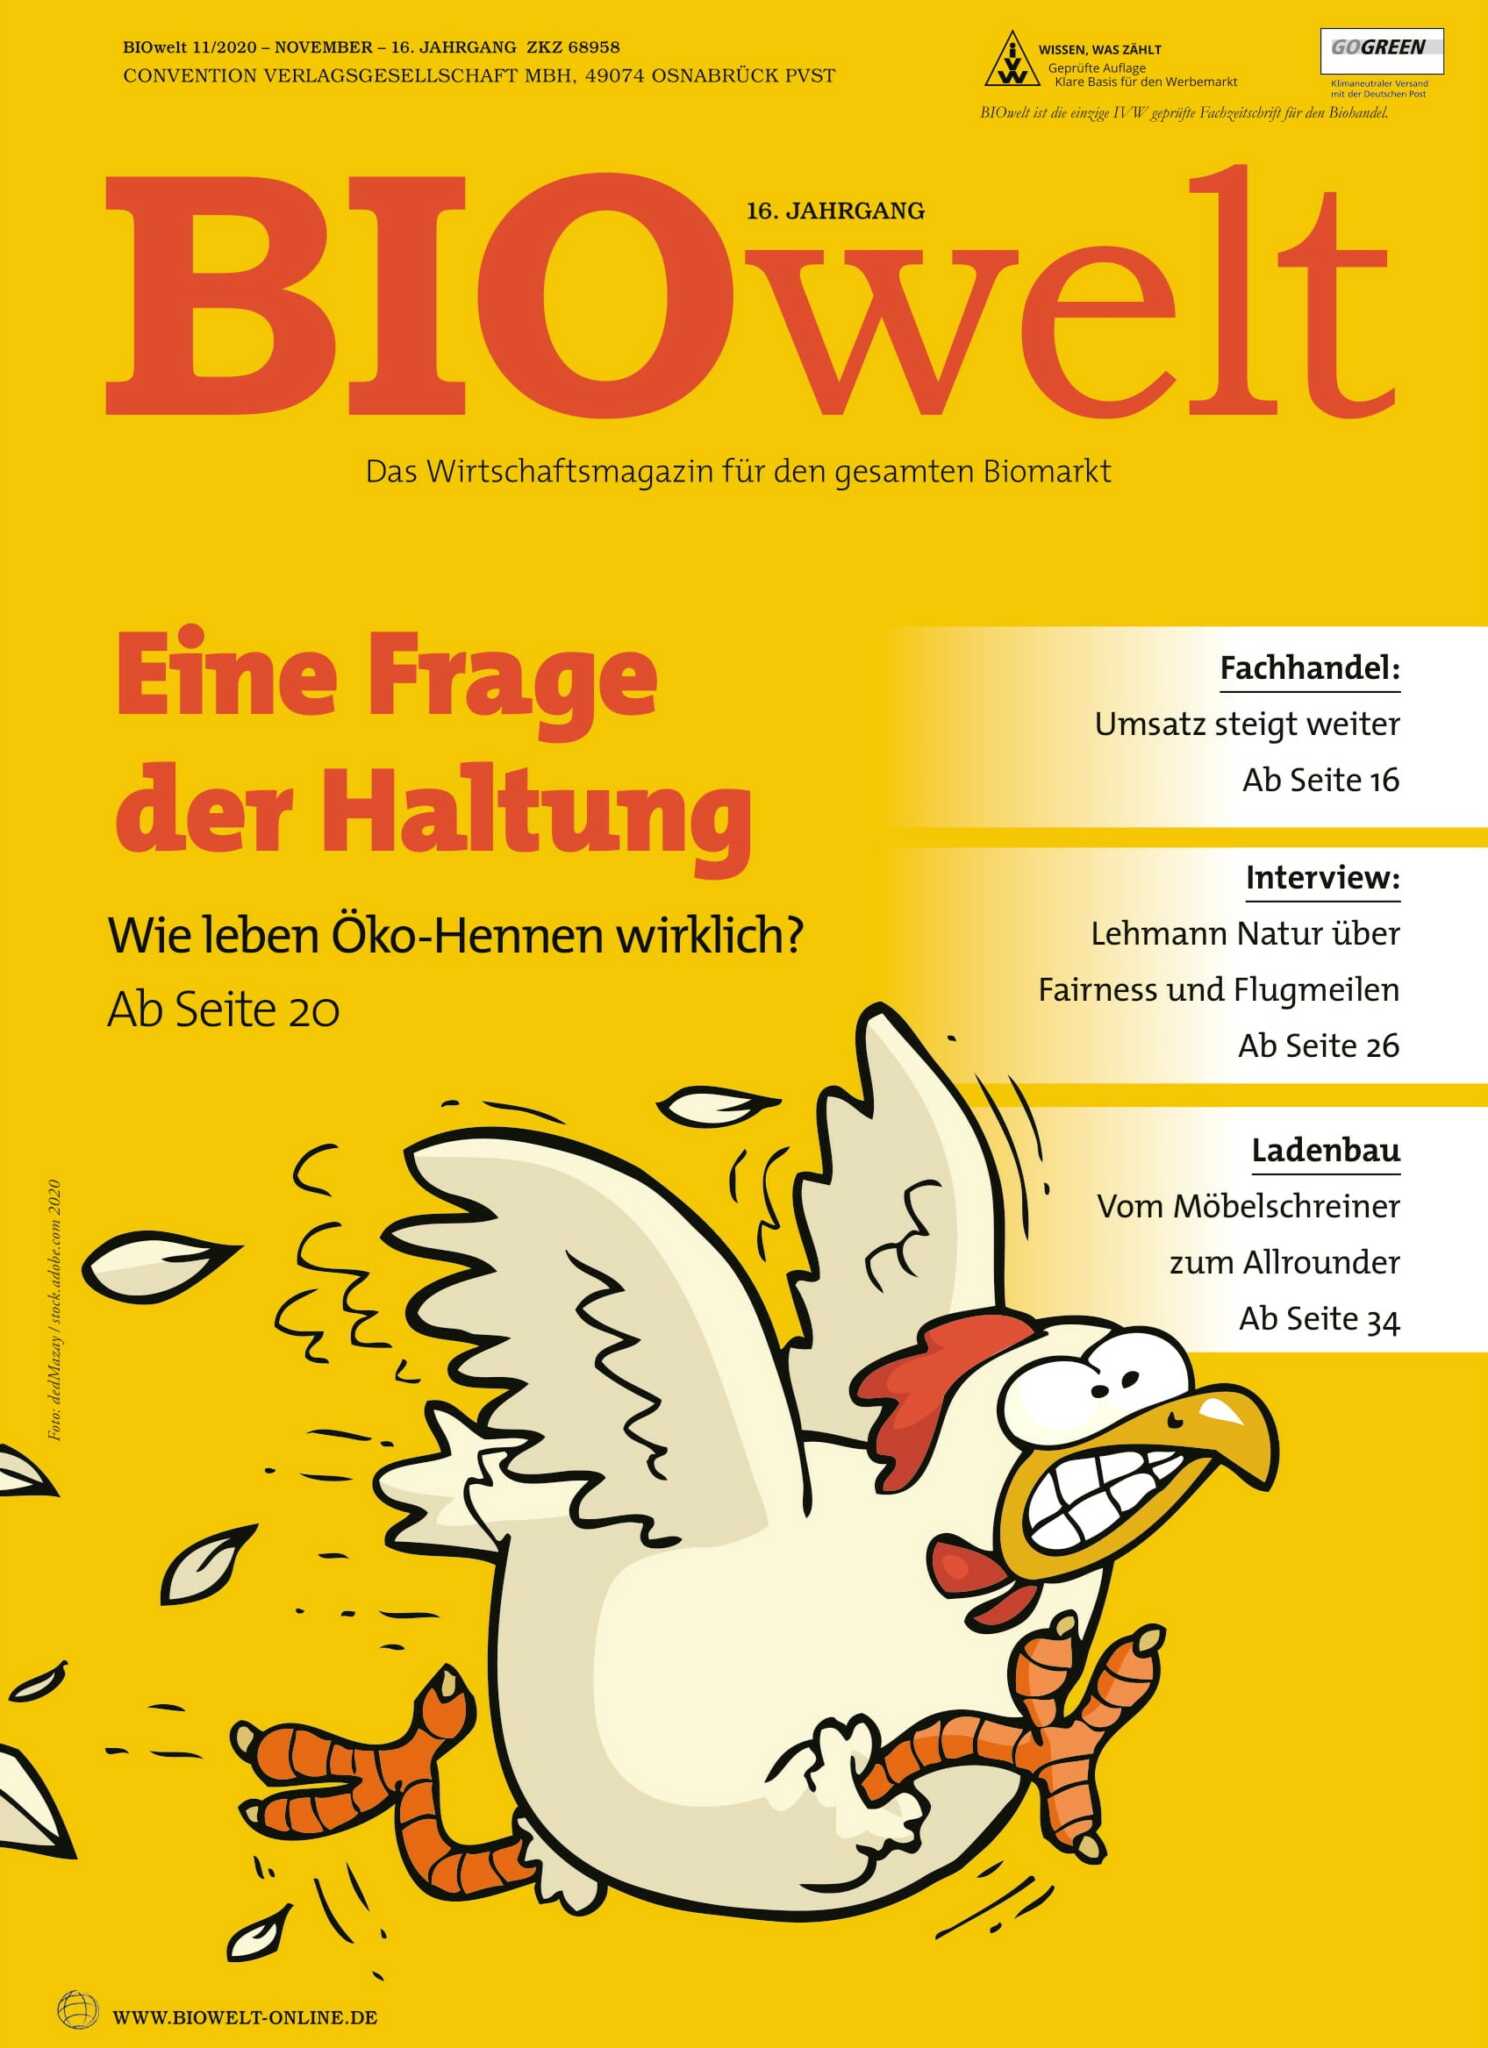 BIOwelt